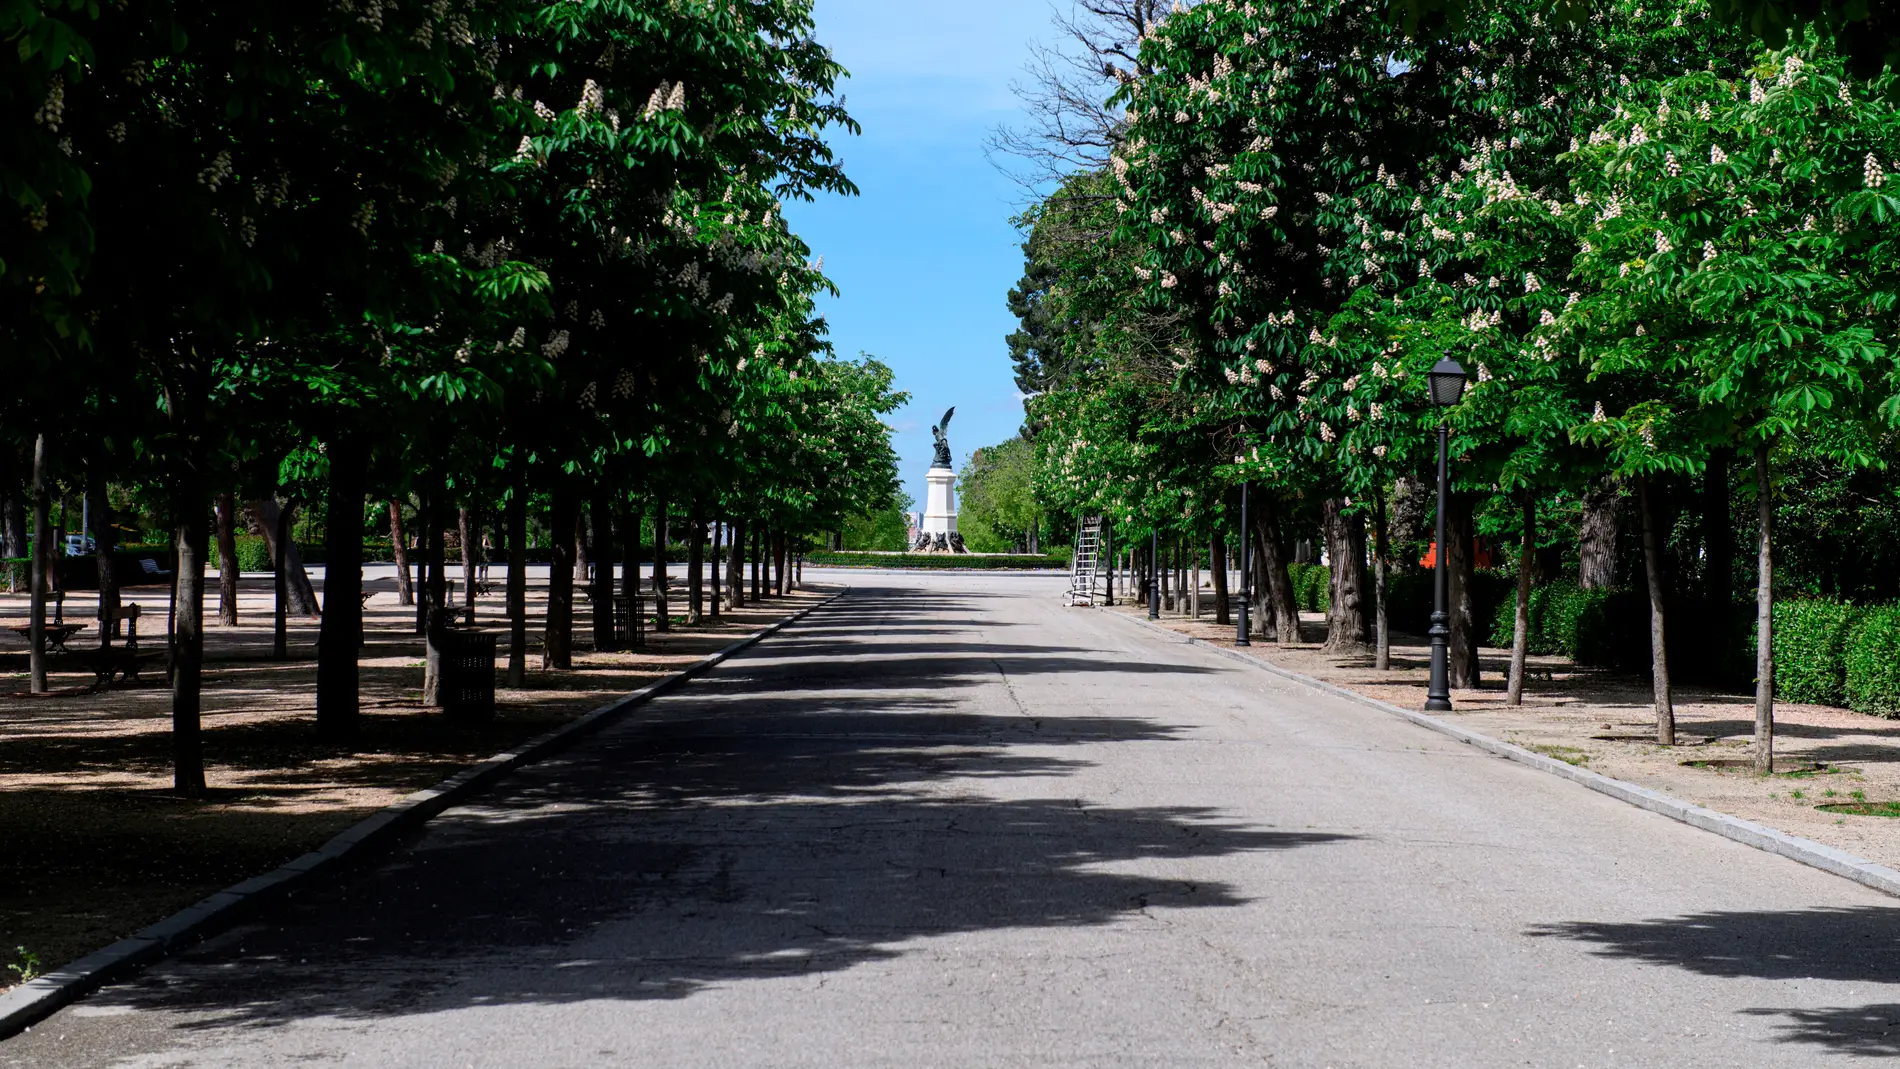  Vista del parque del Retiro de Madrid, cerrado a causa de las medidas del estado de alarma por el coronavirus. 